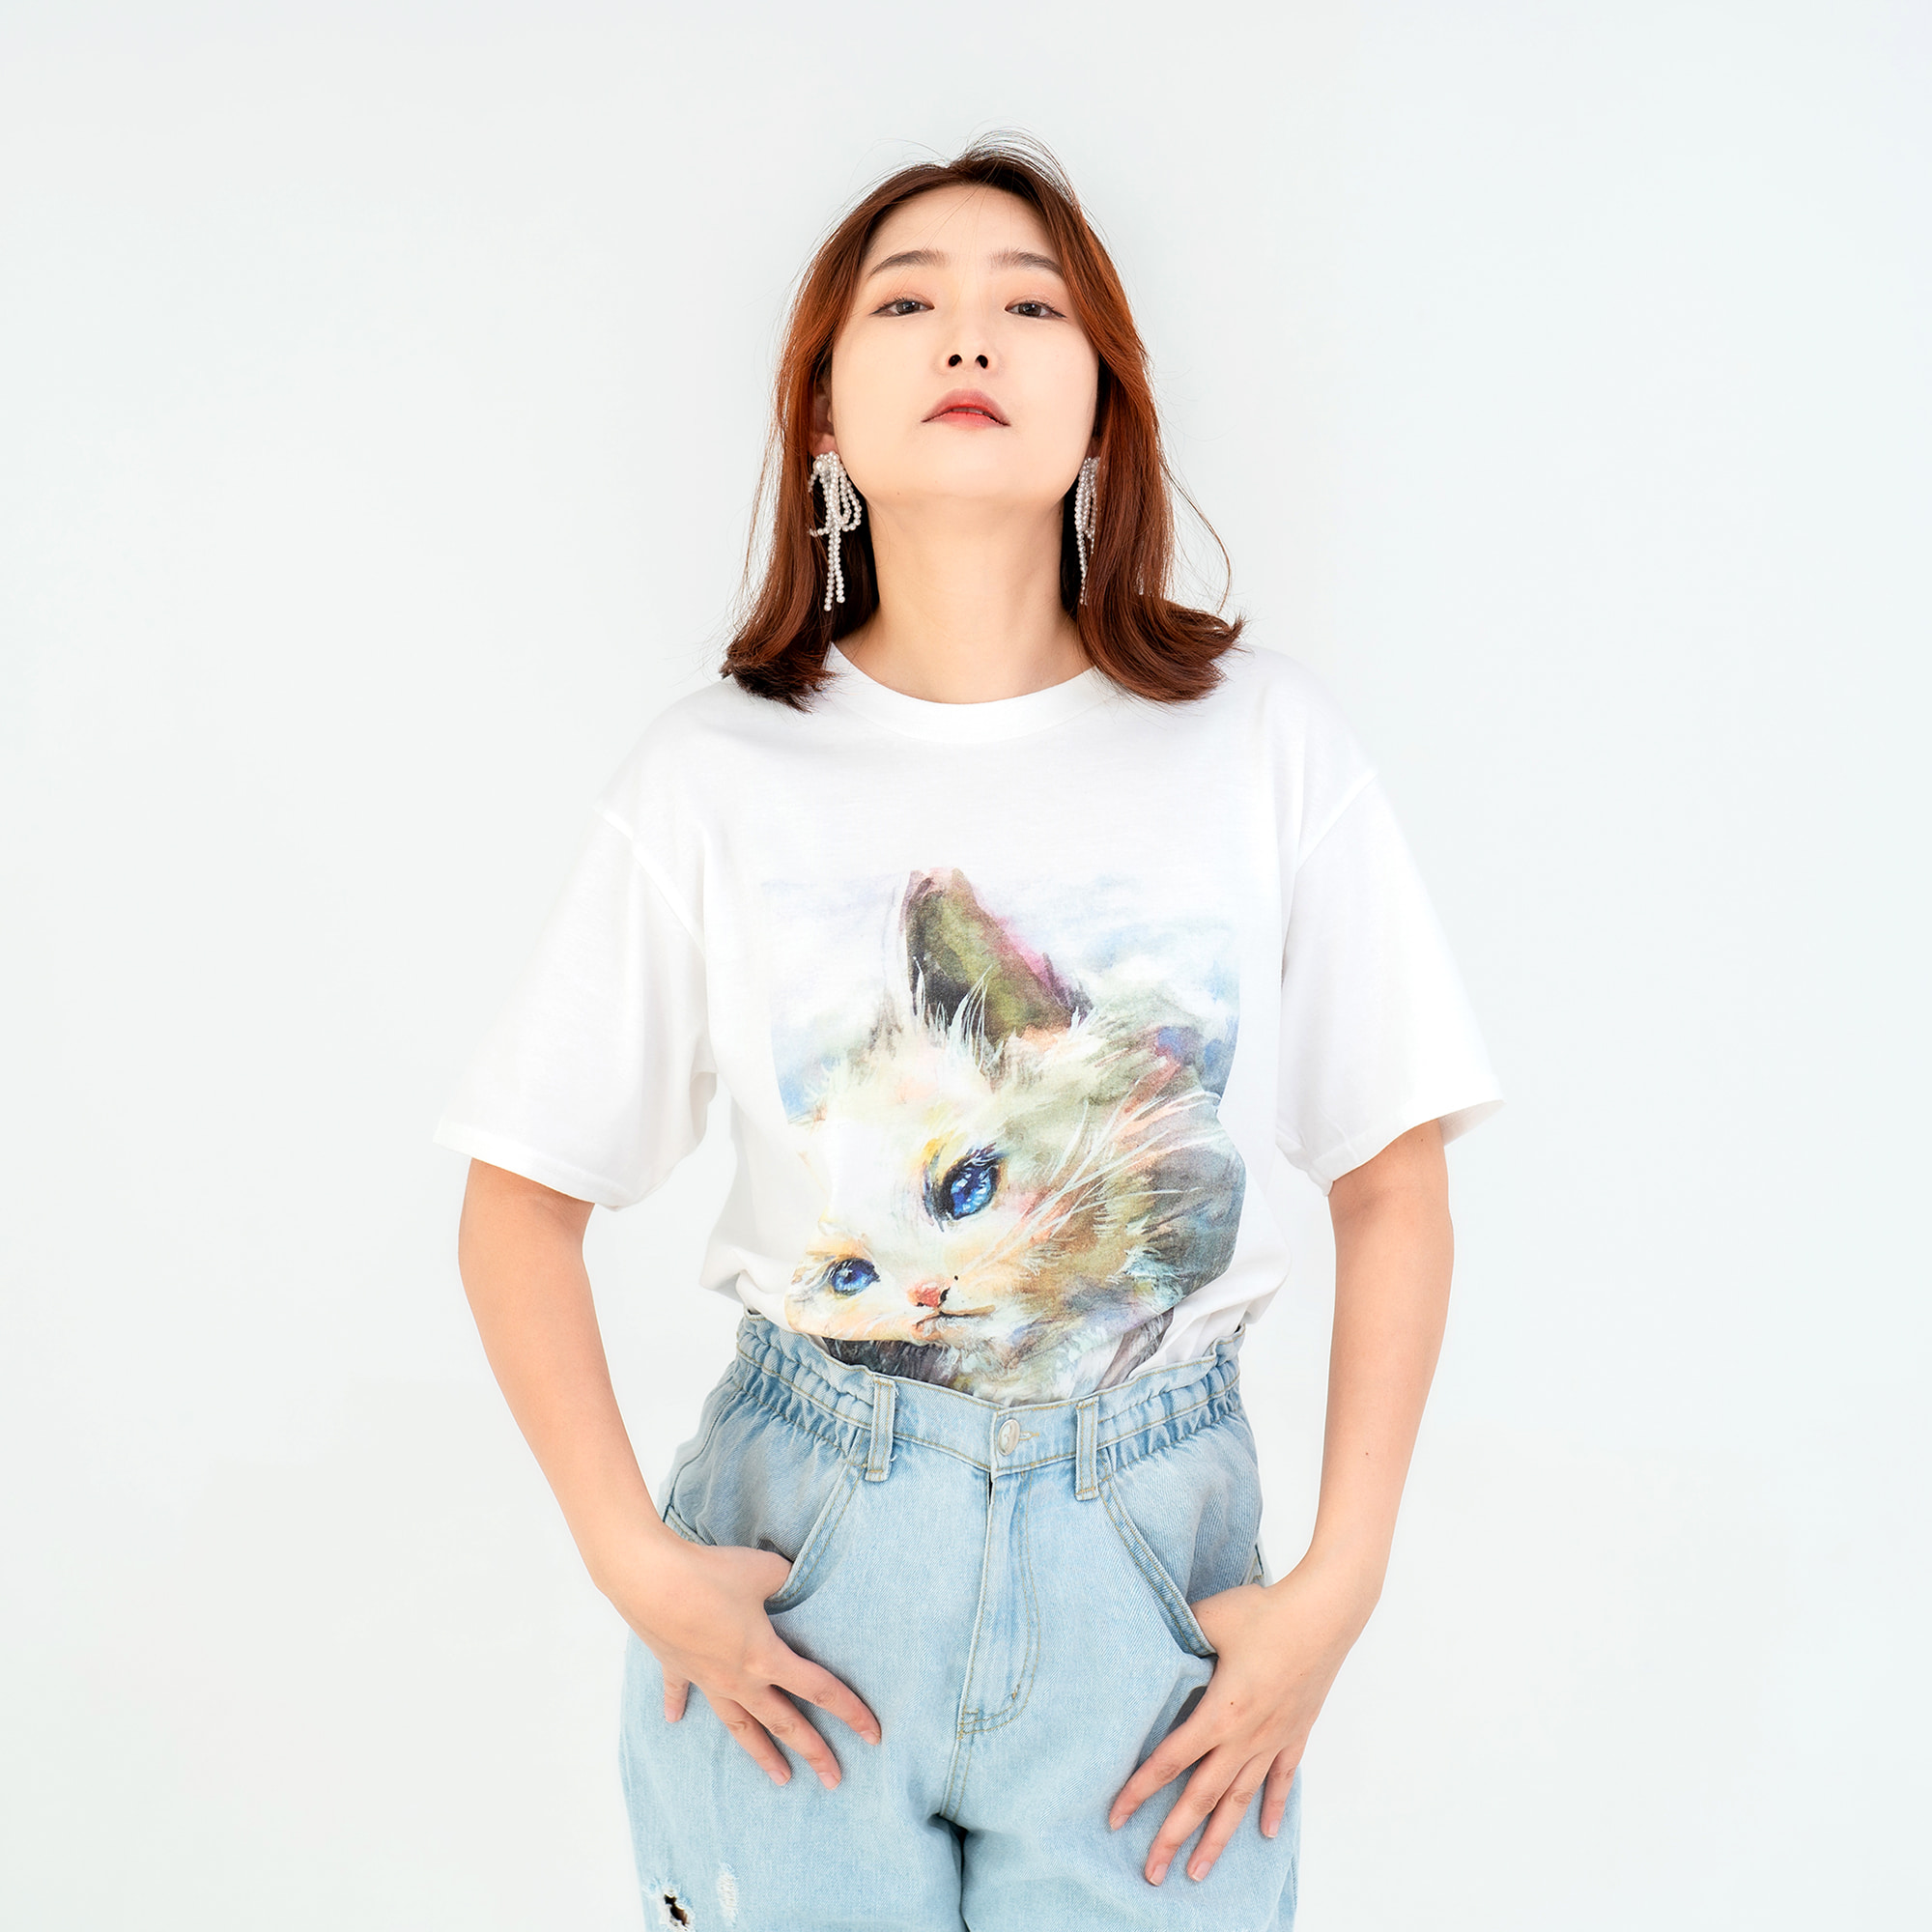 은회색 빛 털과 푸른 눈동자를 가진 페르시안 고양이 그림이 프린트된 ARTIST PRINT 아티스트프린트 고양이 티셔츠